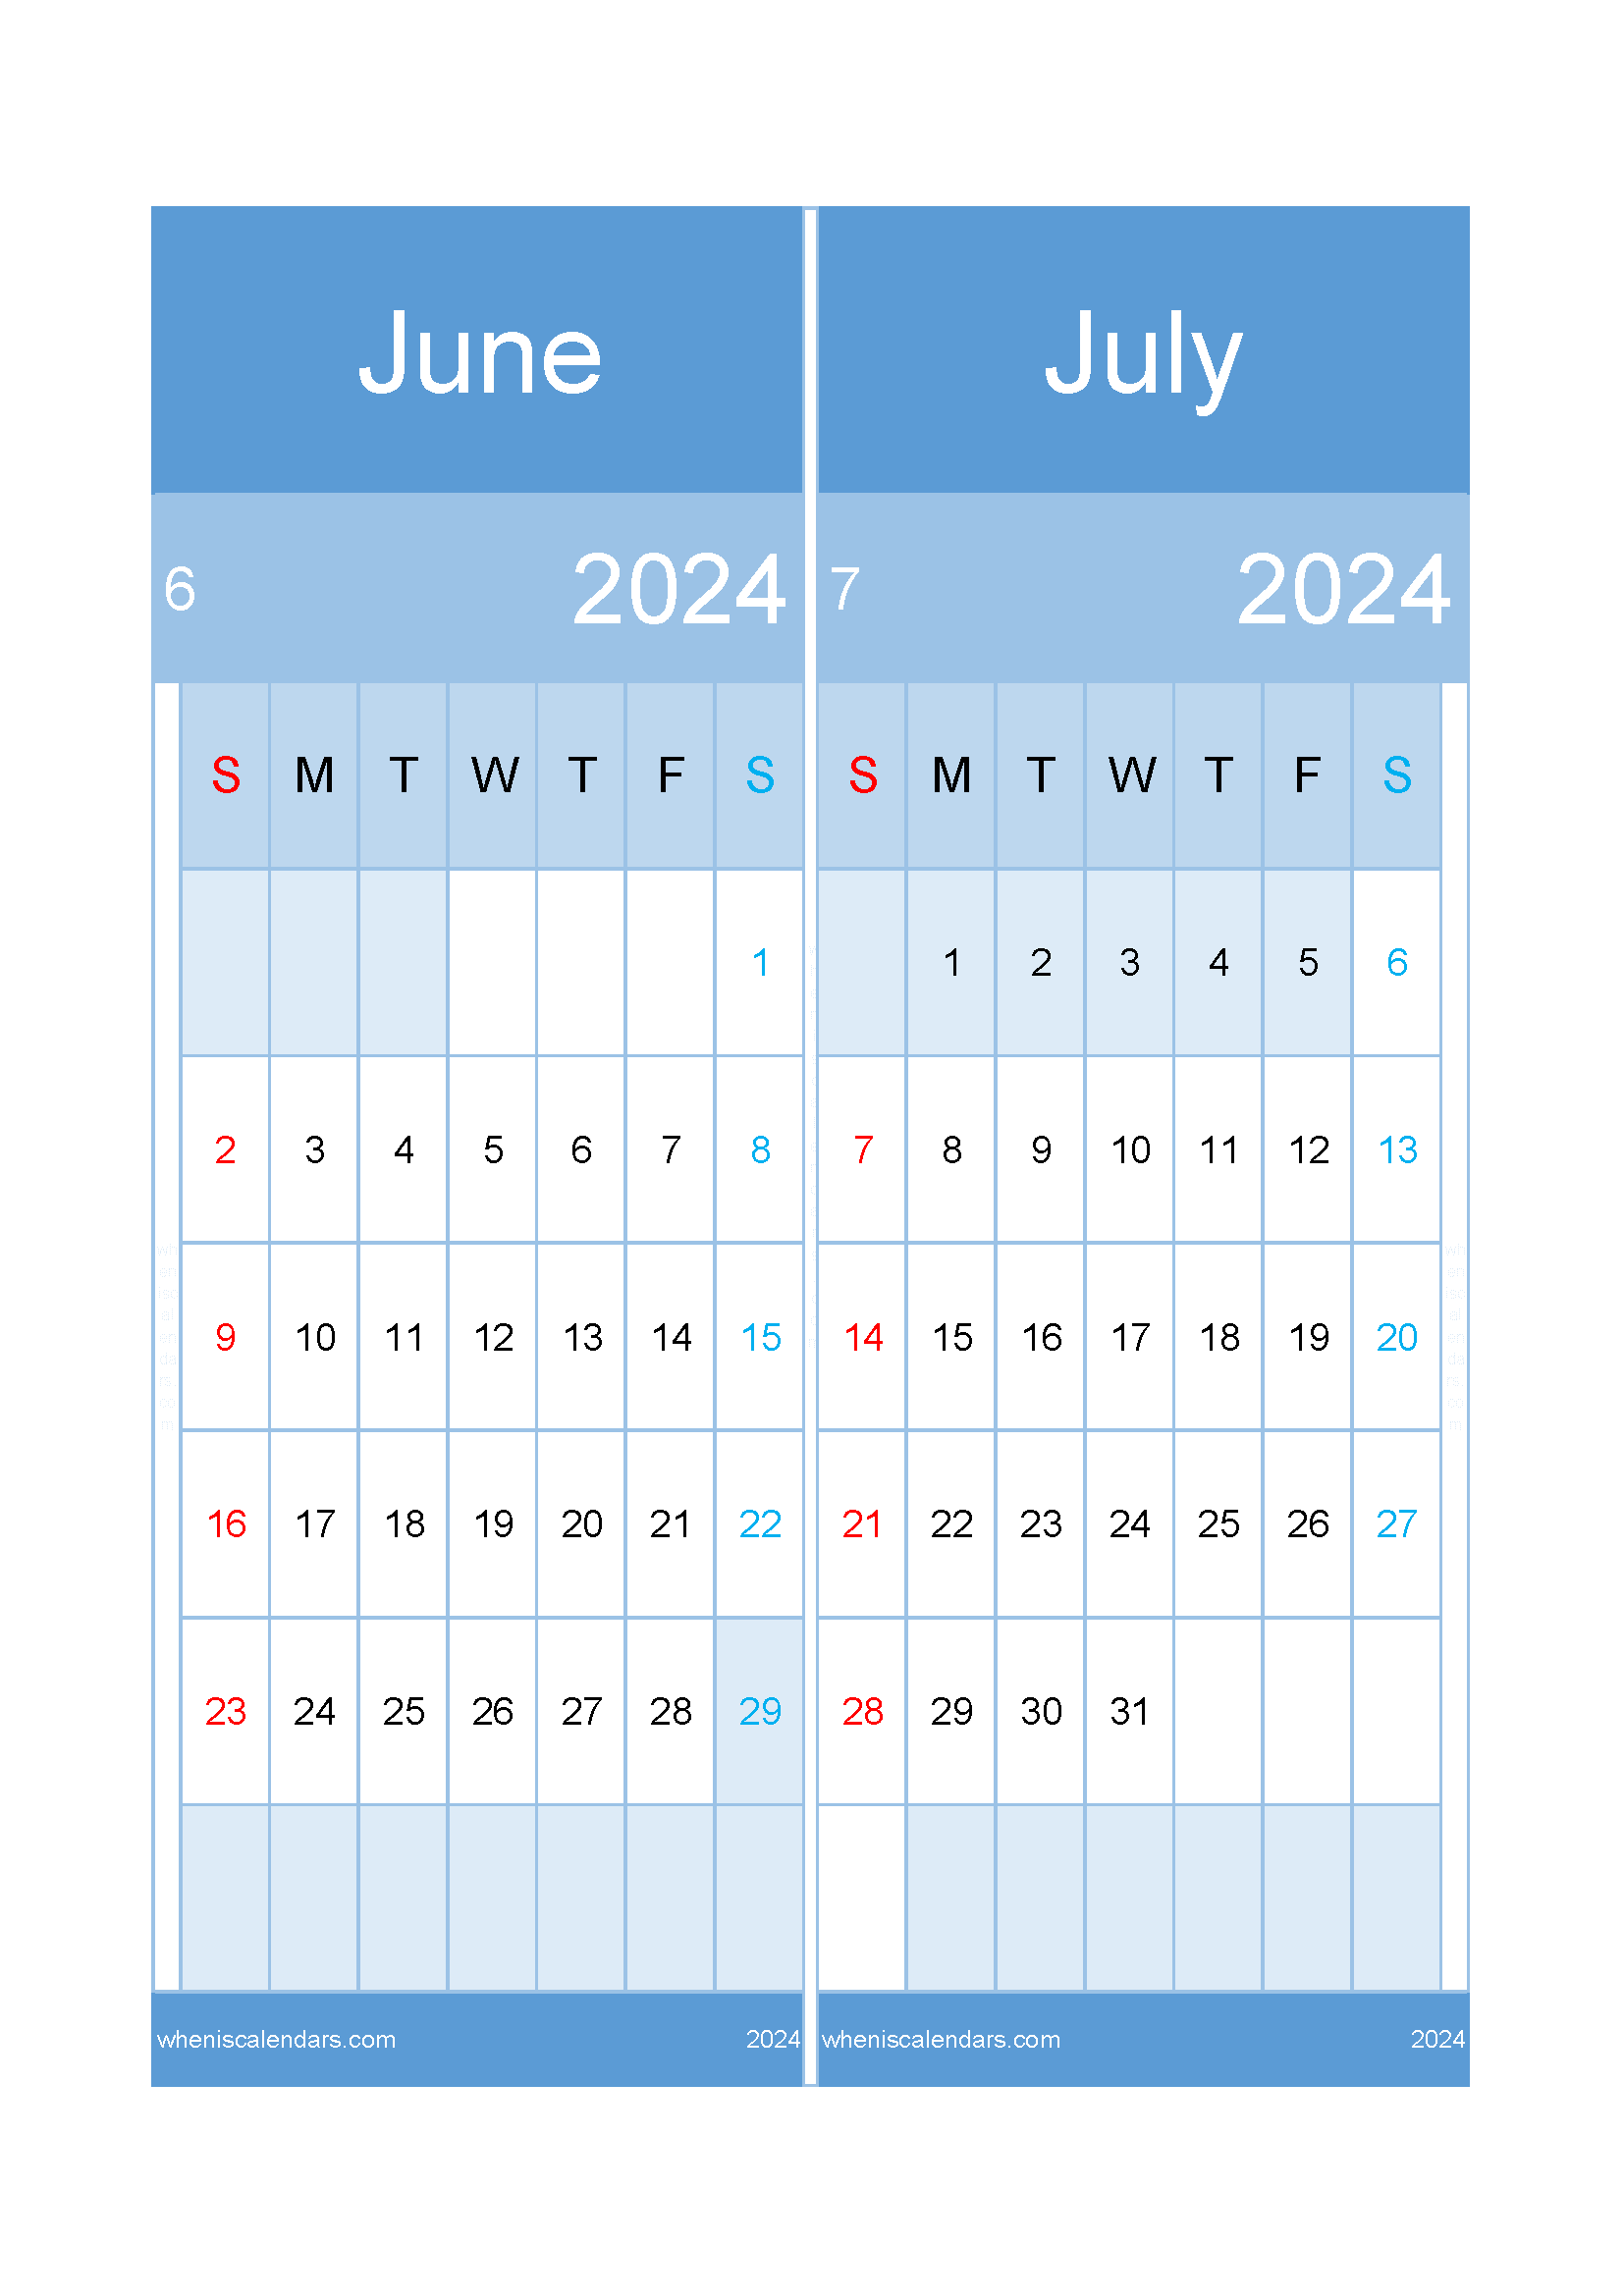 Download June to July 2024 calendar A4 JJ242024